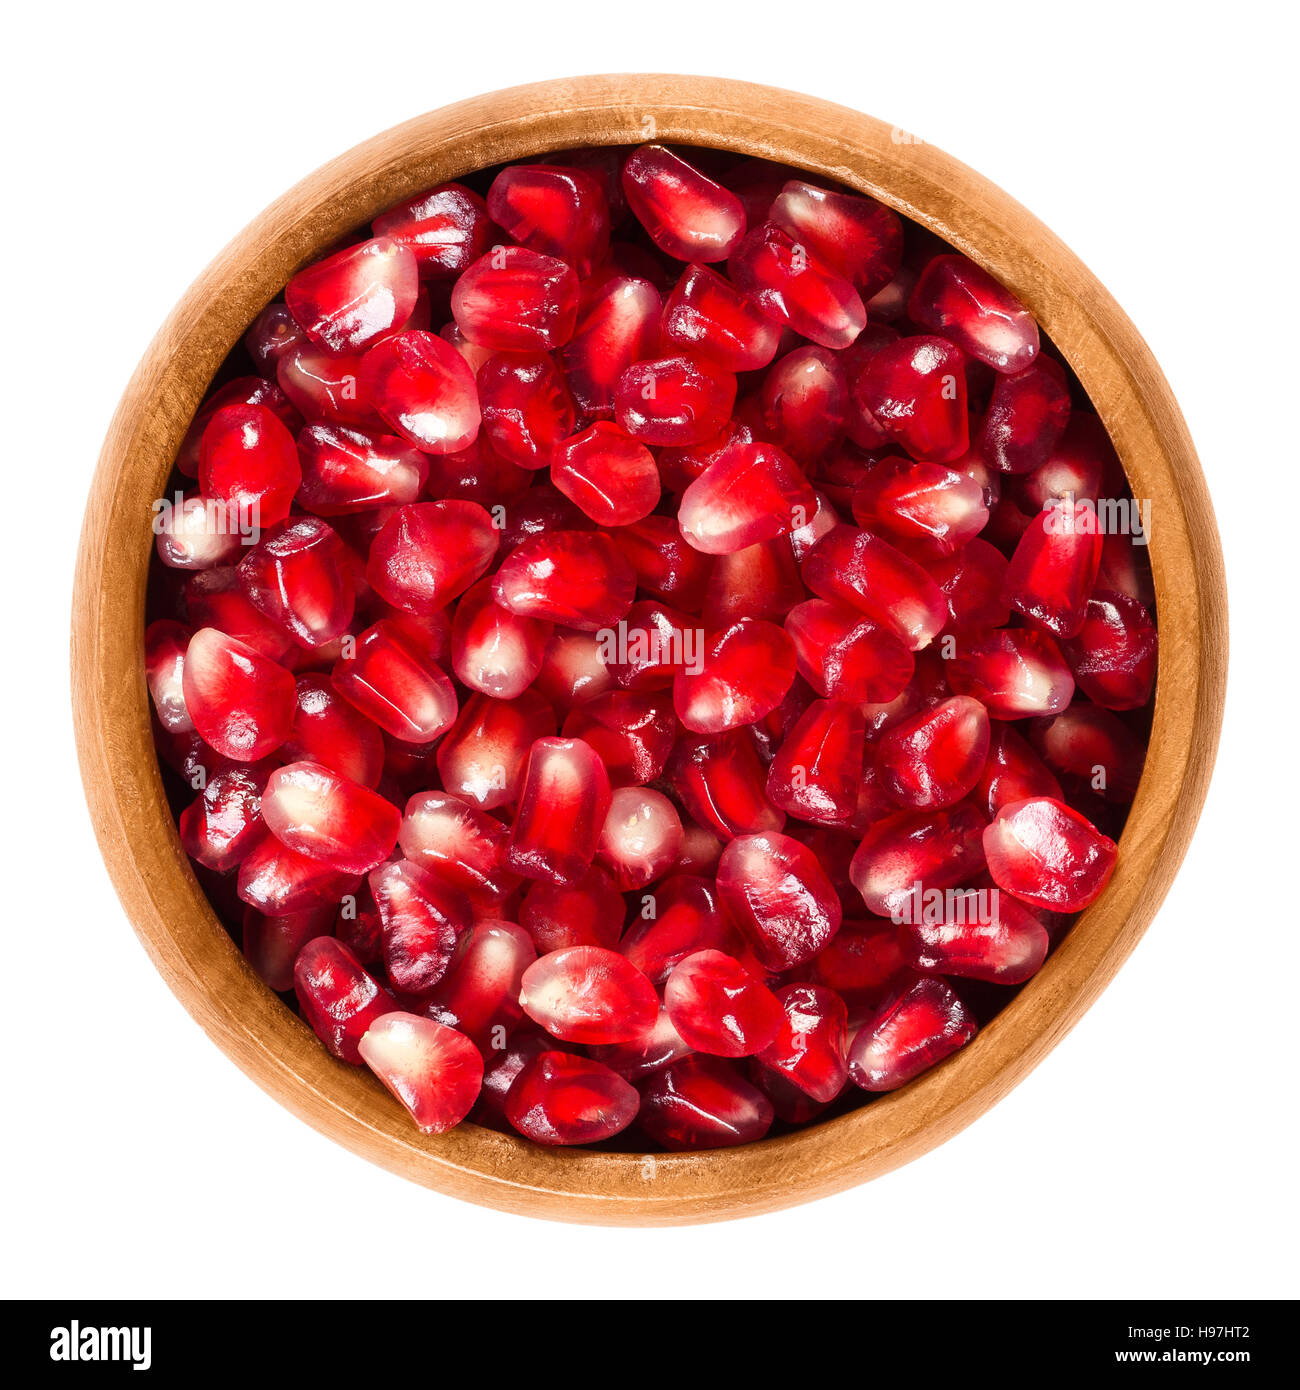 Les graines de grenade fraîche dans bol en bois. Graines rouge comestible du fruit de Punica granatum, séparés de l'écorce. Banque D'Images